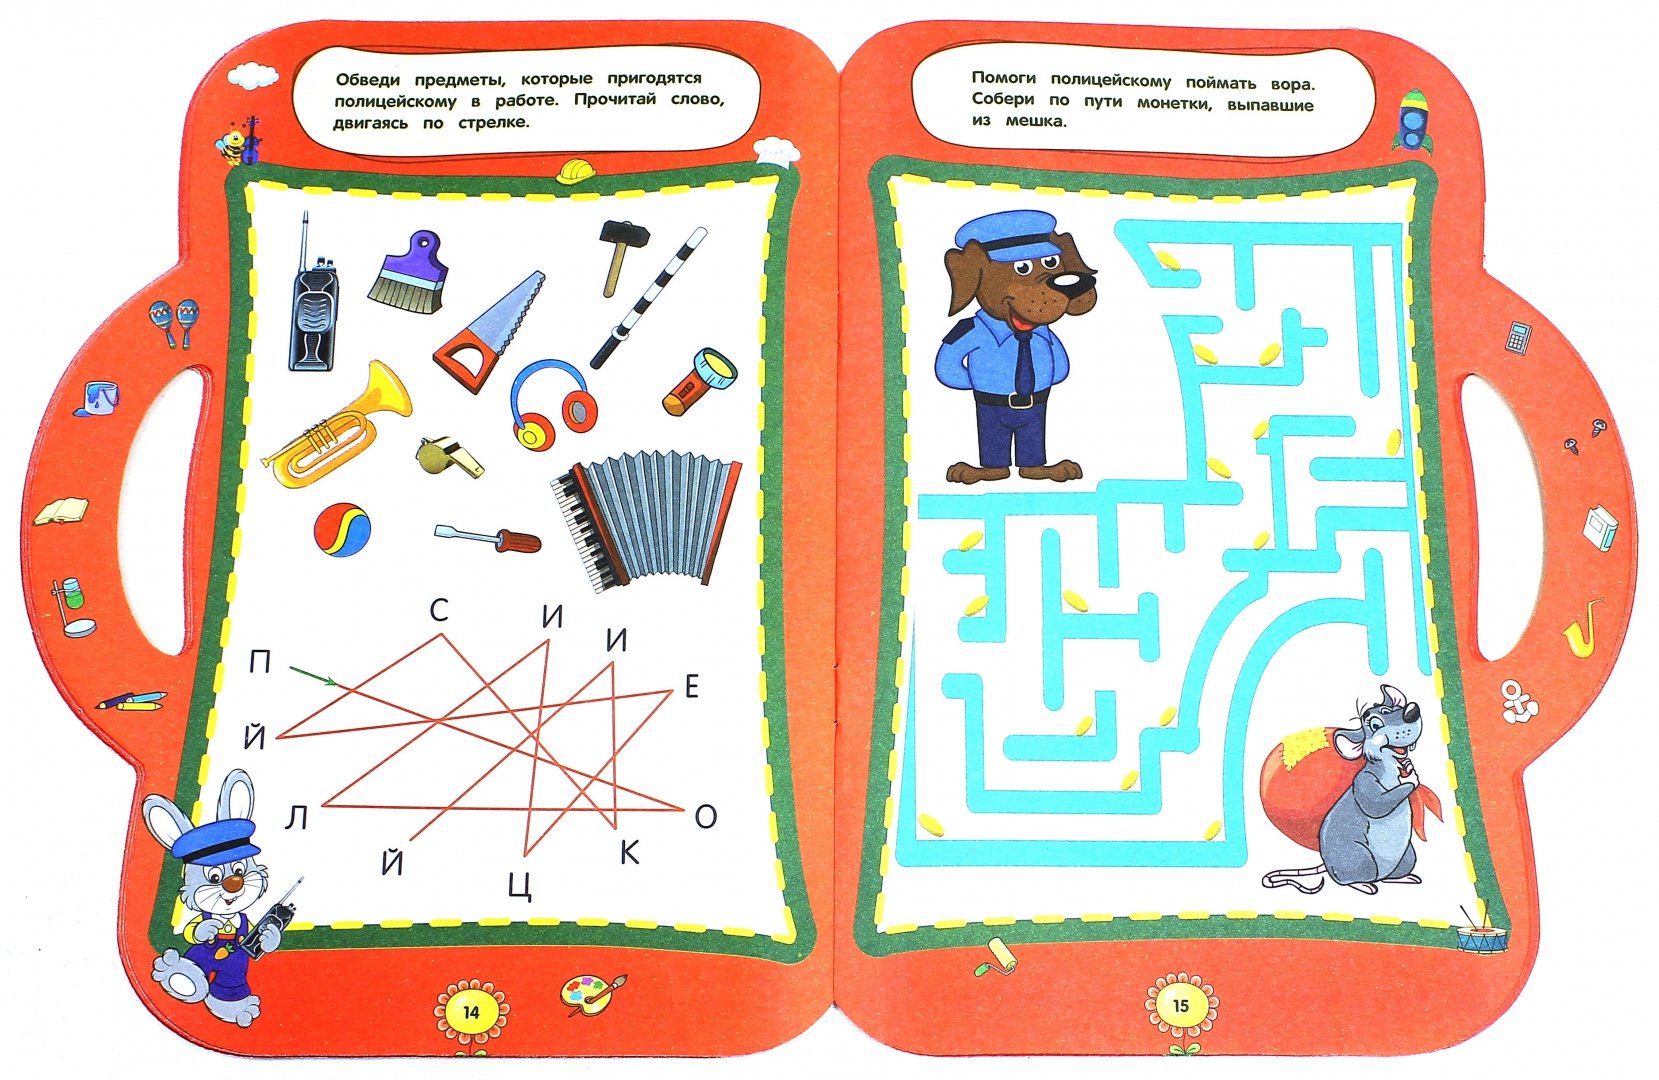 Игра познавательные истории. Интеллектуальные задания для детей. Развивающие игры для 6 лет. Развивающие книги для детей 6-7 лет. Интеллектуальные задания для детей 6-7 лет.